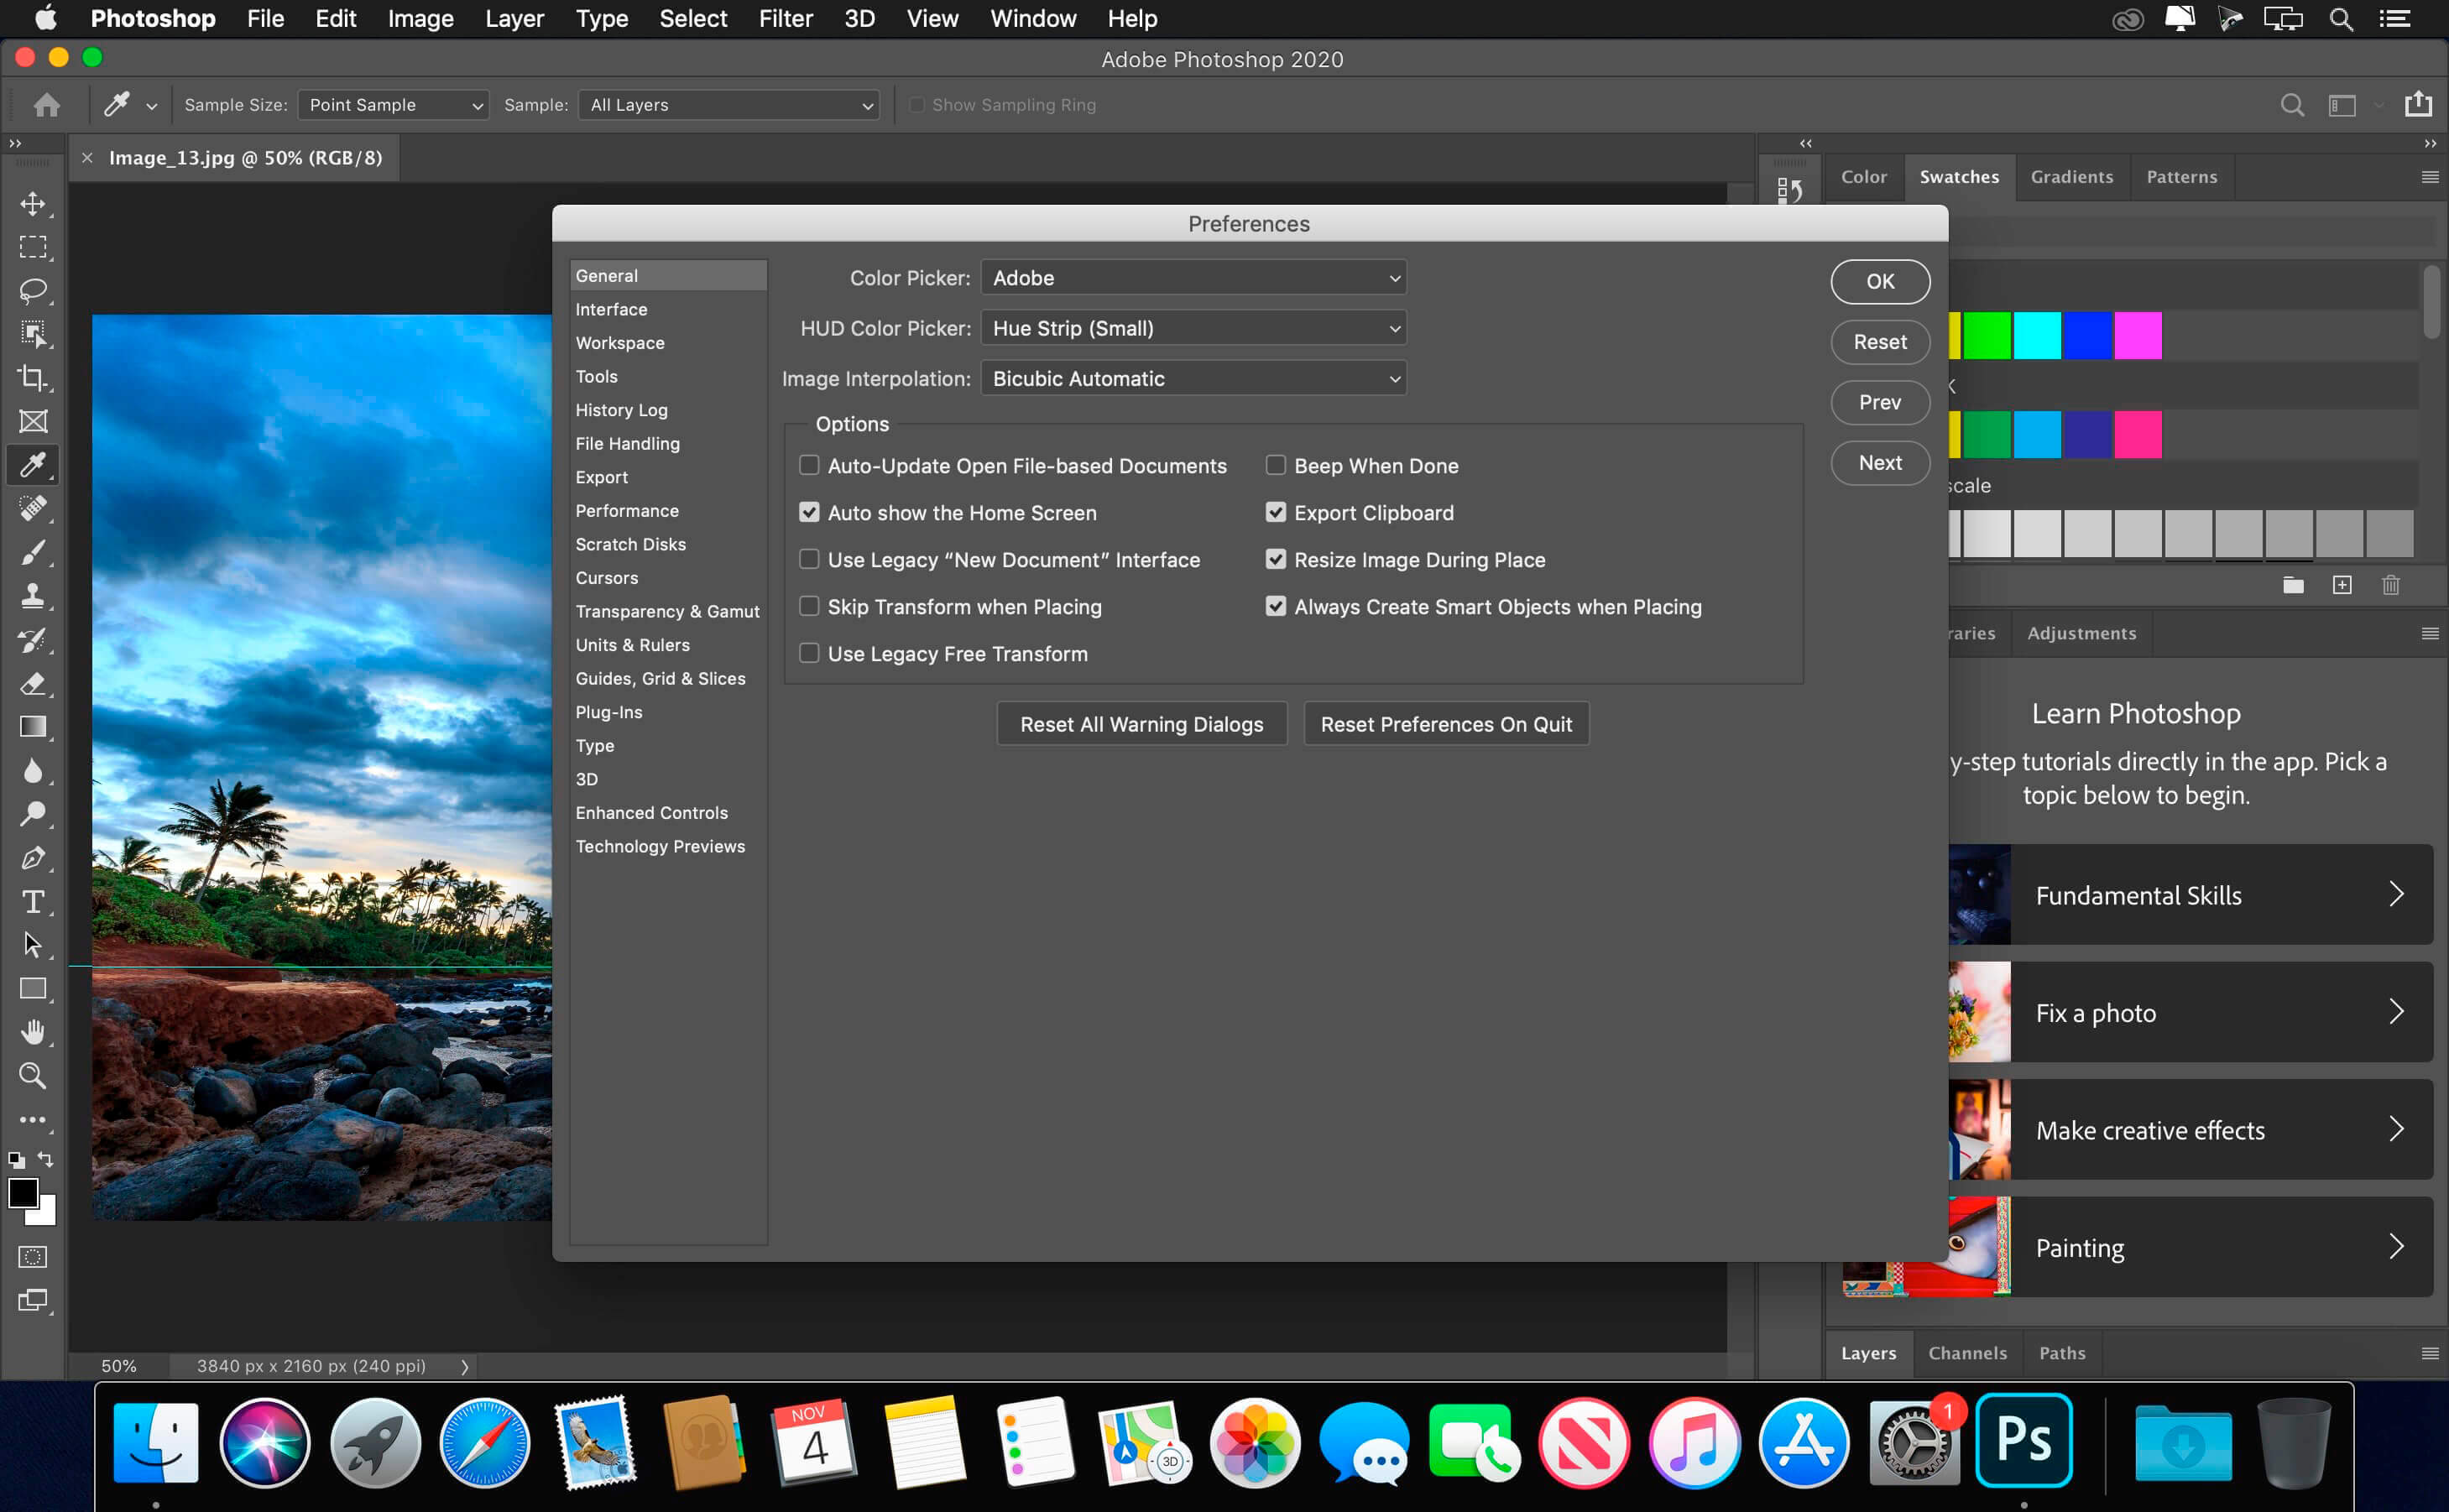 Adobe Photoshop 2020 v21.2.5 download | macOS